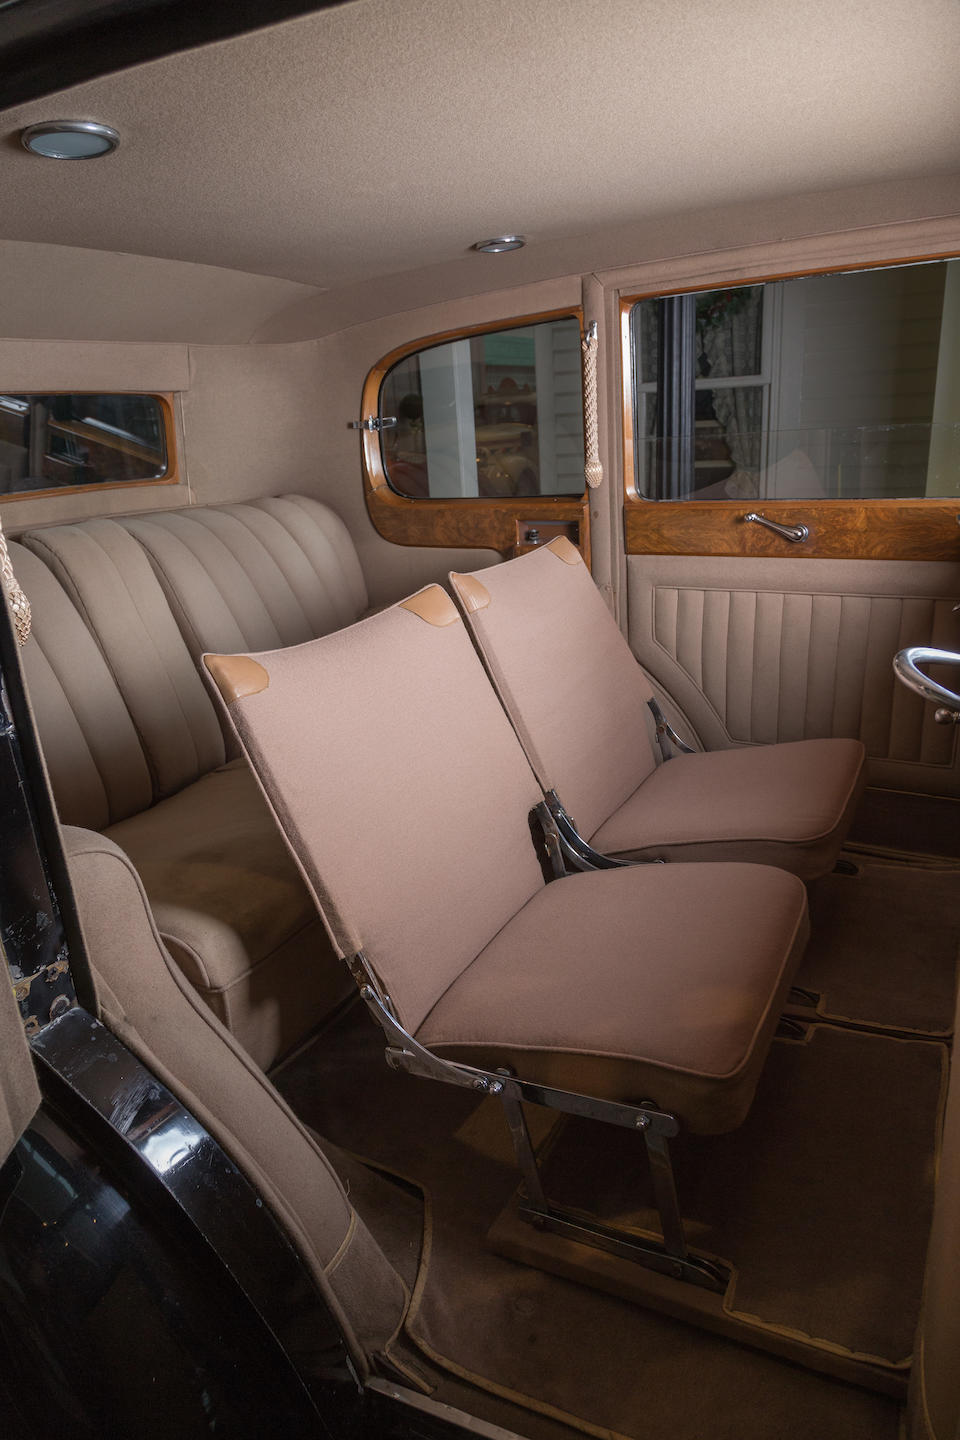 <b>1936 Rolls-Royce Phantom III 40/50hp Enclosed Limousine  </b><br />Chassis no. 3 AZ 226 <br />Engine no. N 14 M